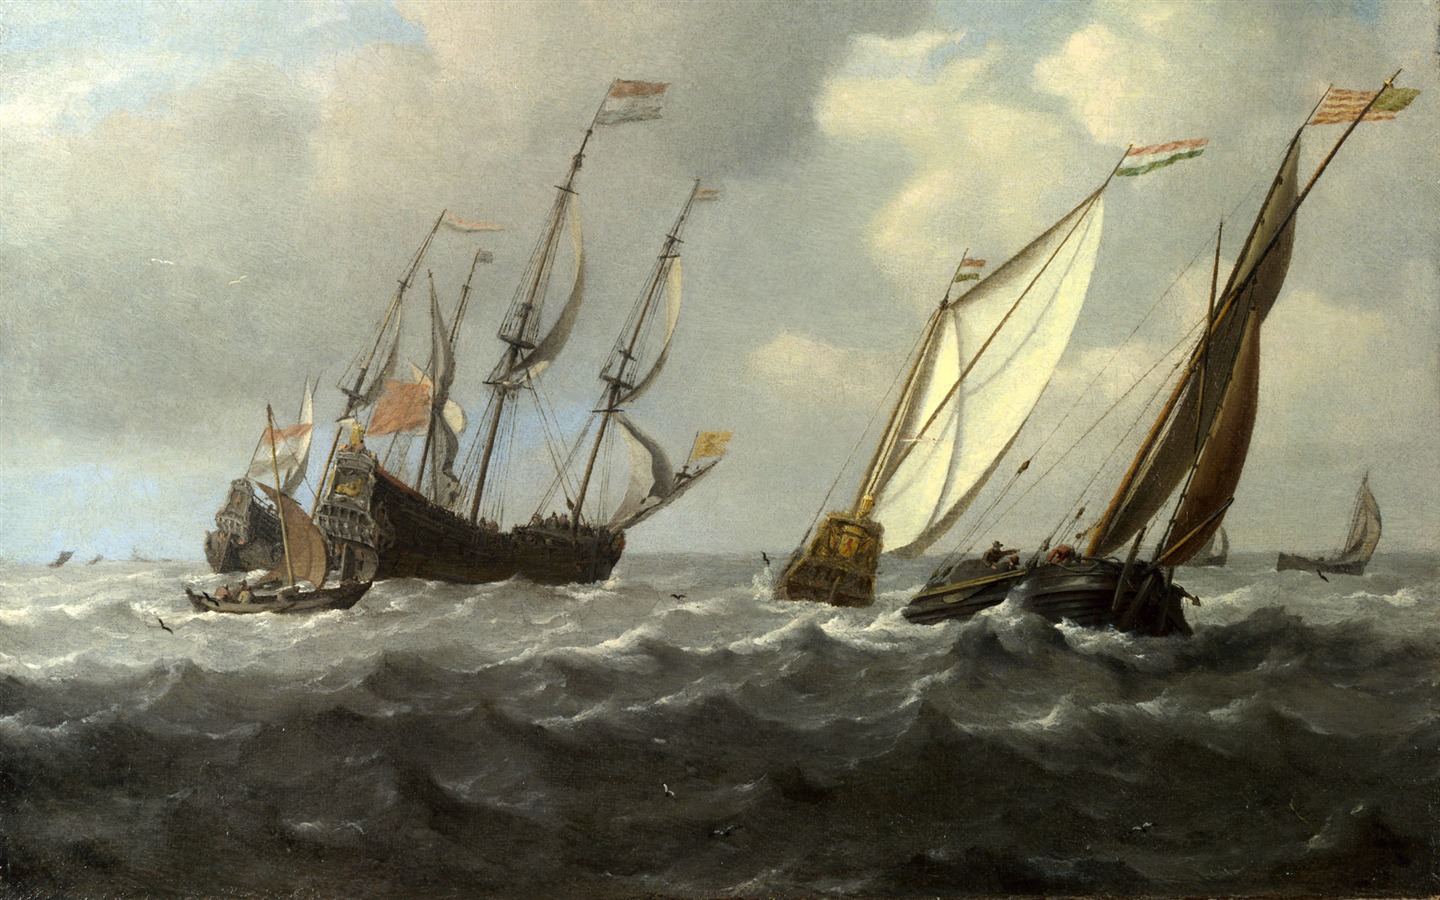 伦敦画廊帆船 壁纸(二)1 - 1440x900